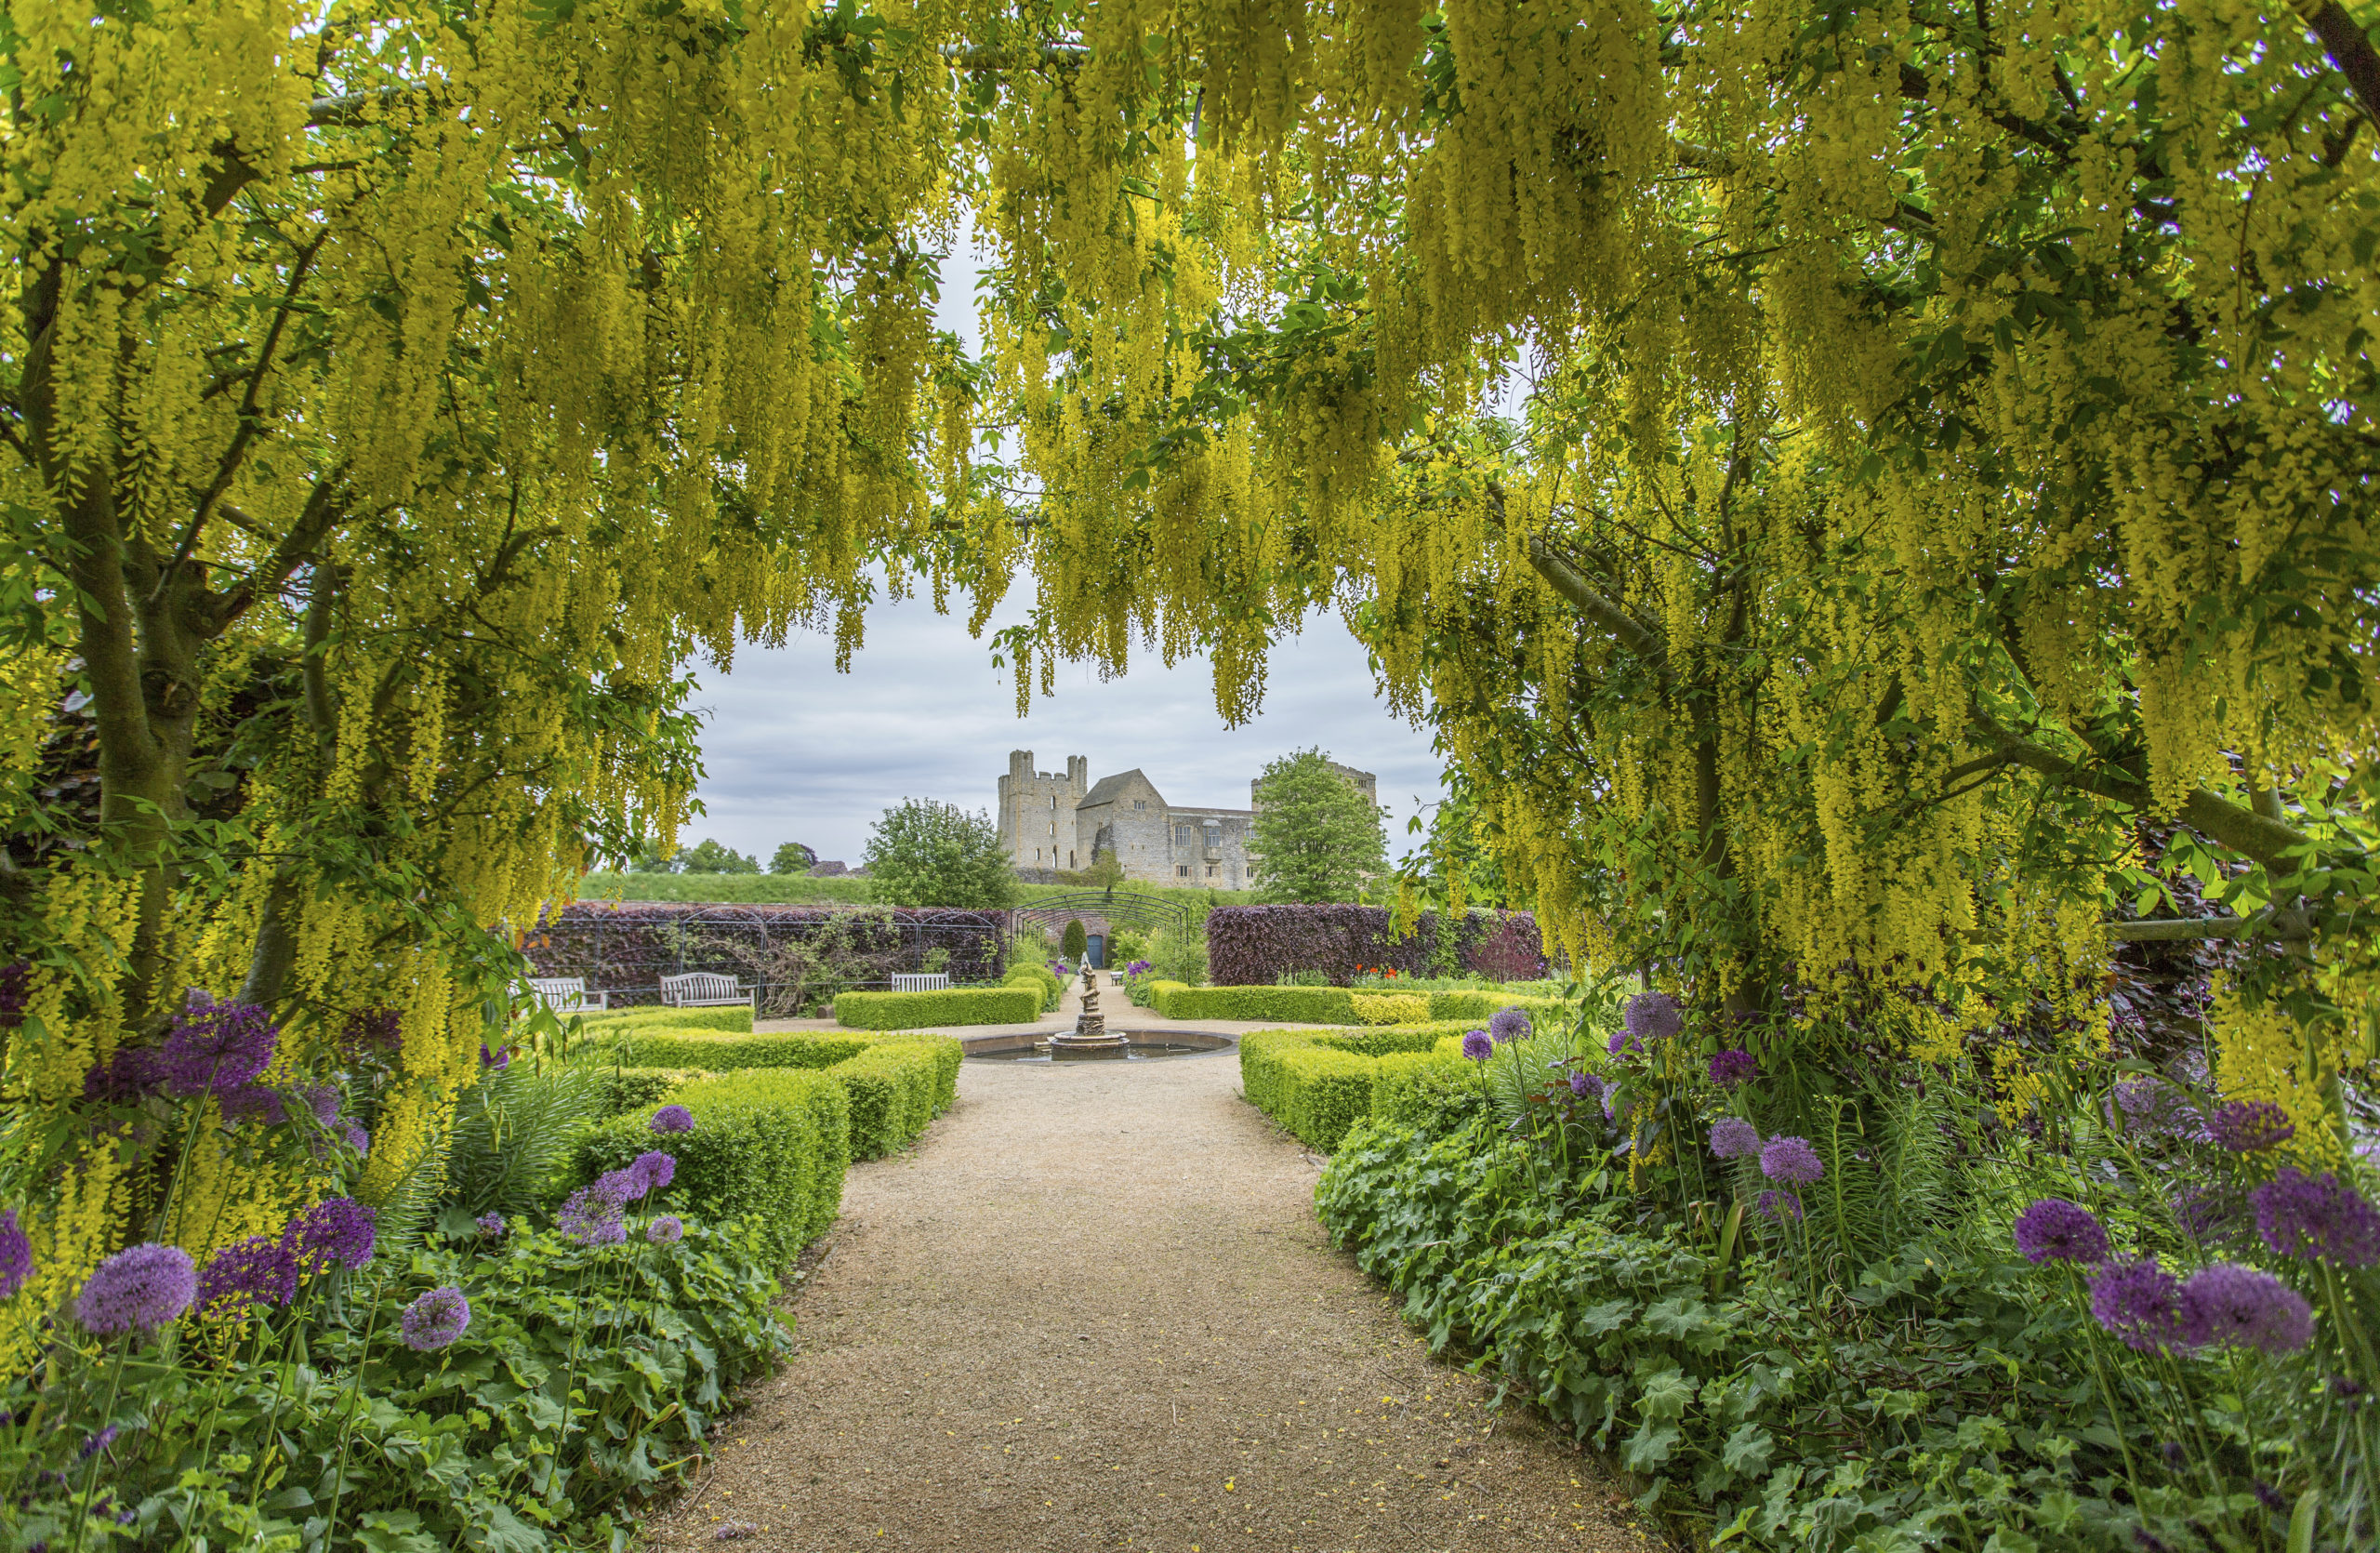 Helmsley Castle Walled Garden, Helmsley, England